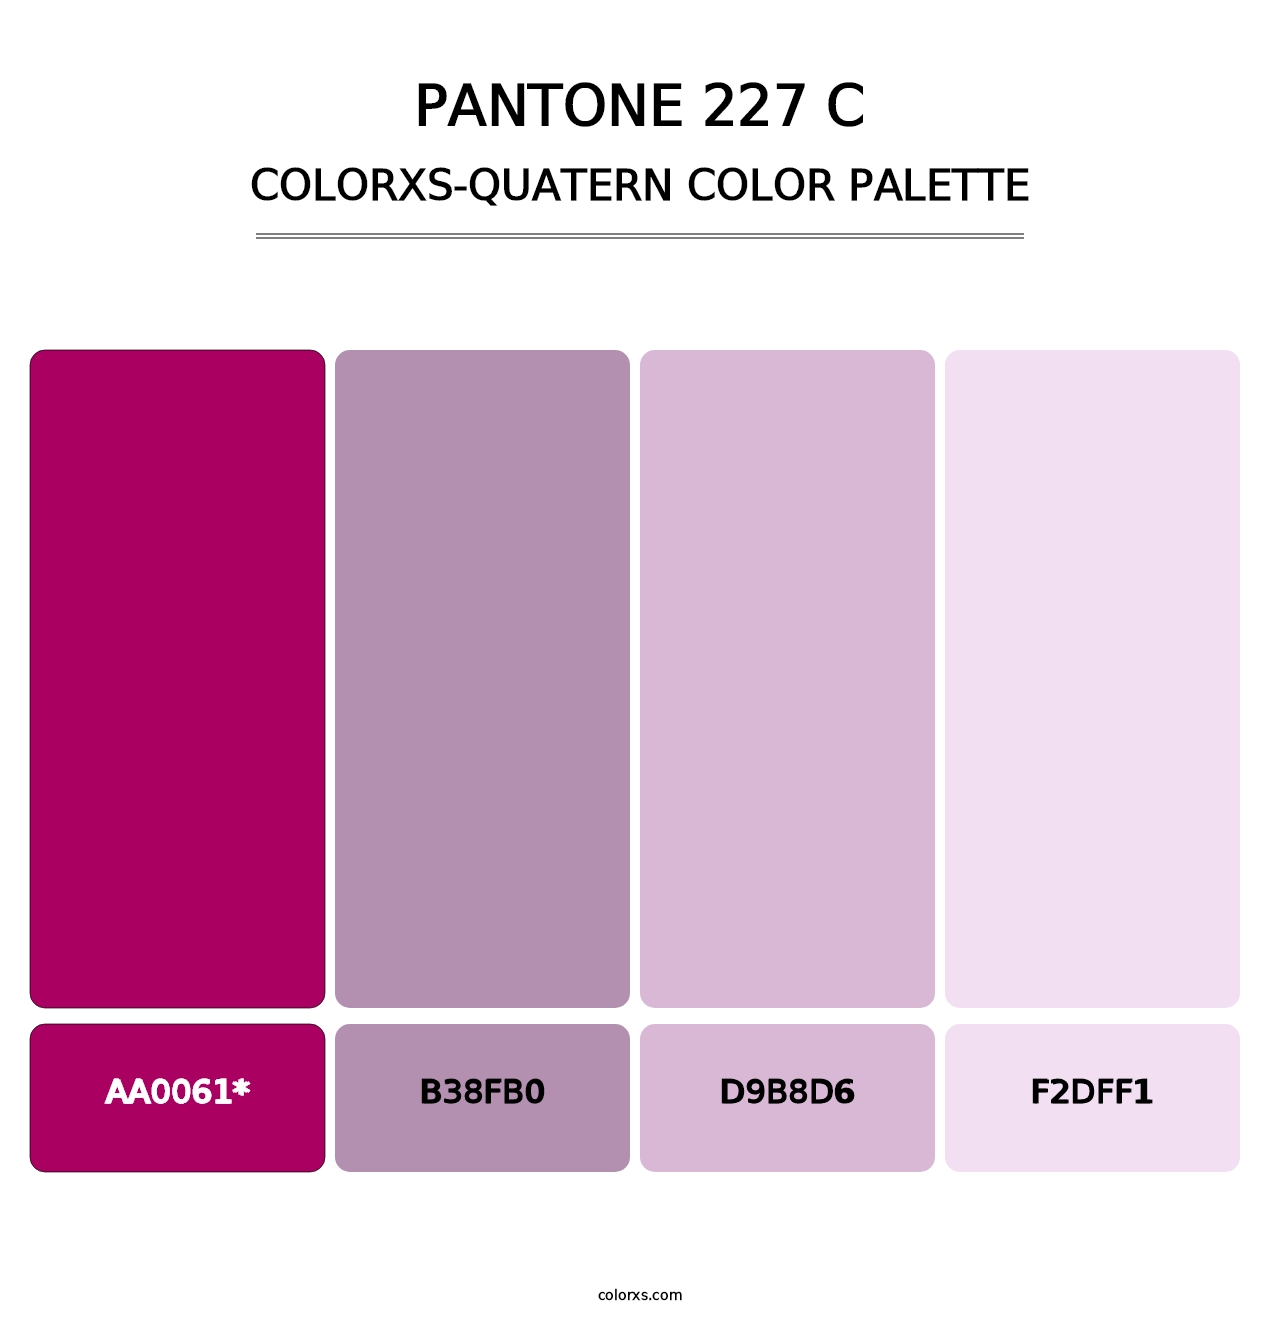 PANTONE 227 C - Colorxs Quatern Palette